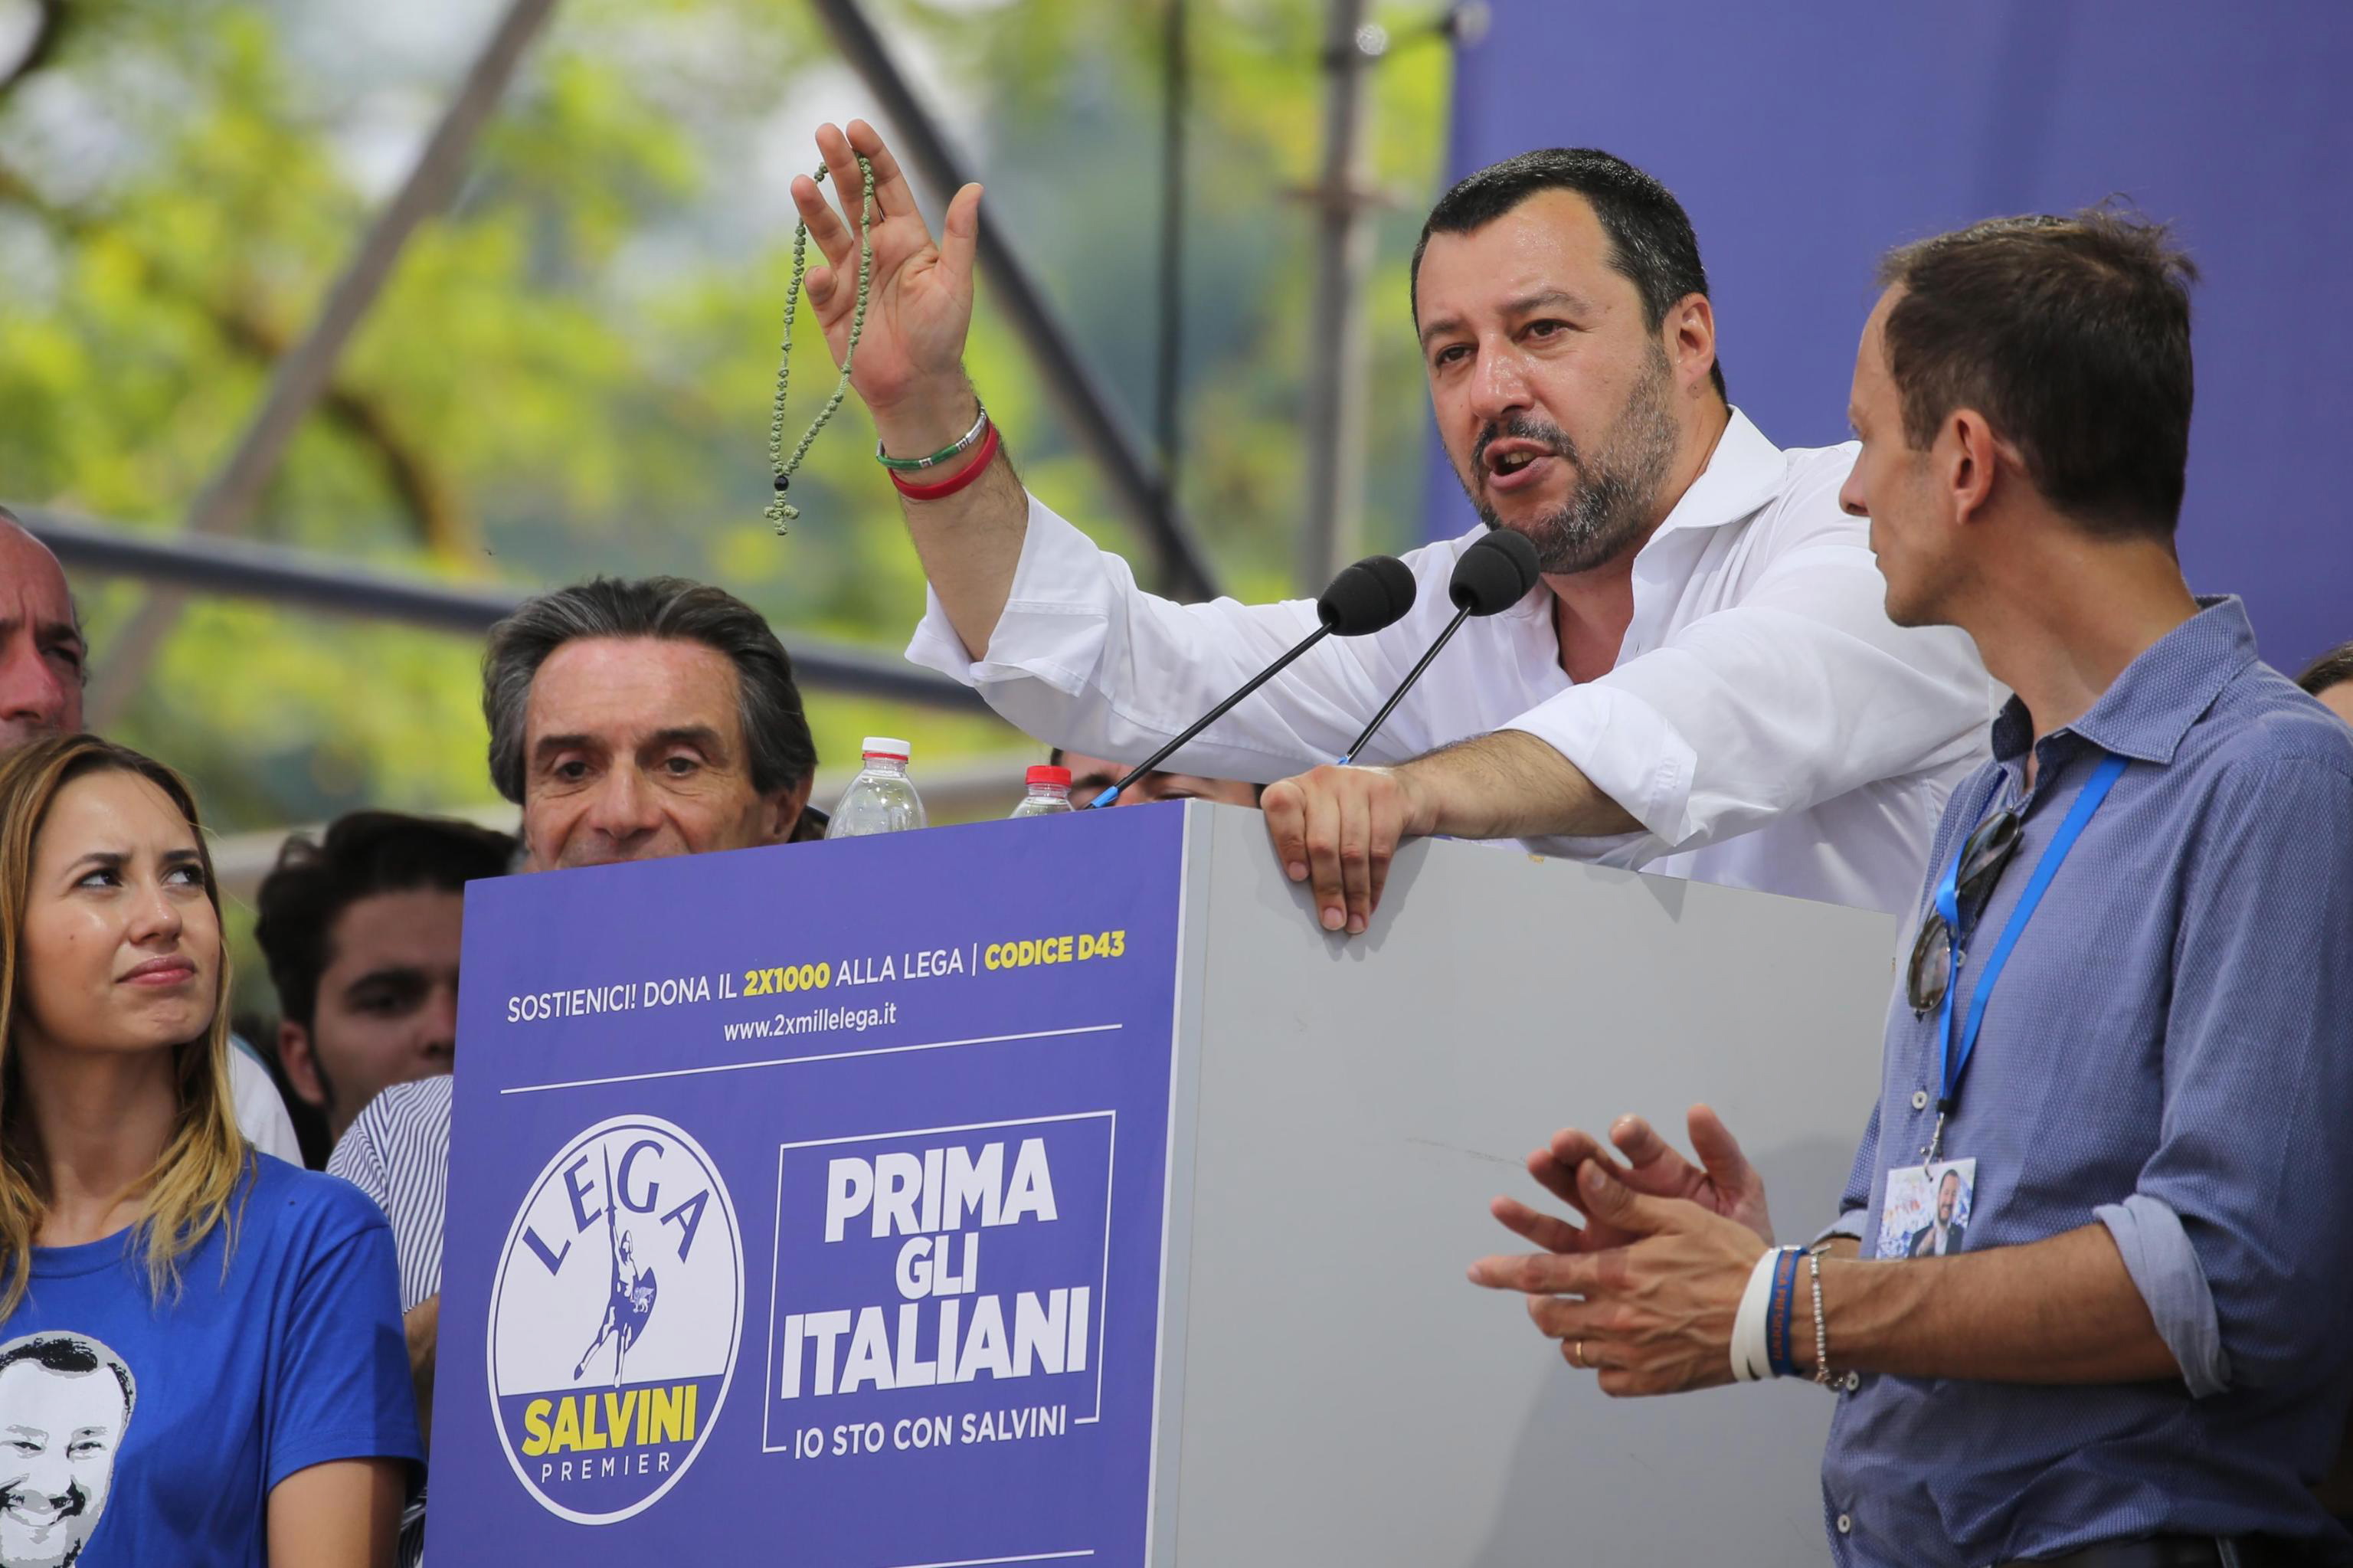 Ιταλία – Σαλβίνι: Συμμαχία όσων συμμερίζονται την ιδεολογία της Λέγκας